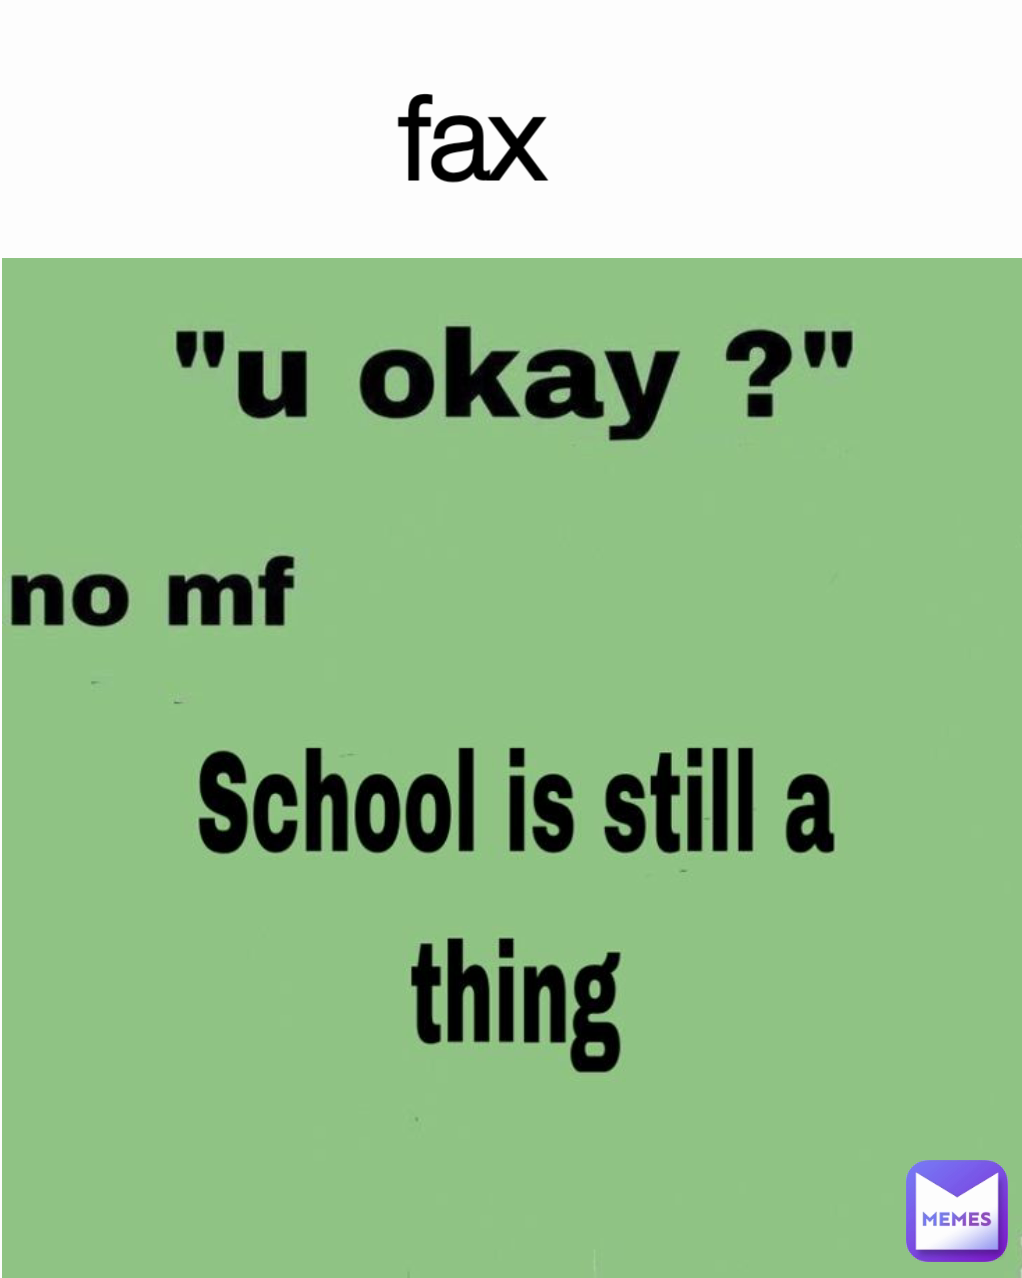 fax
